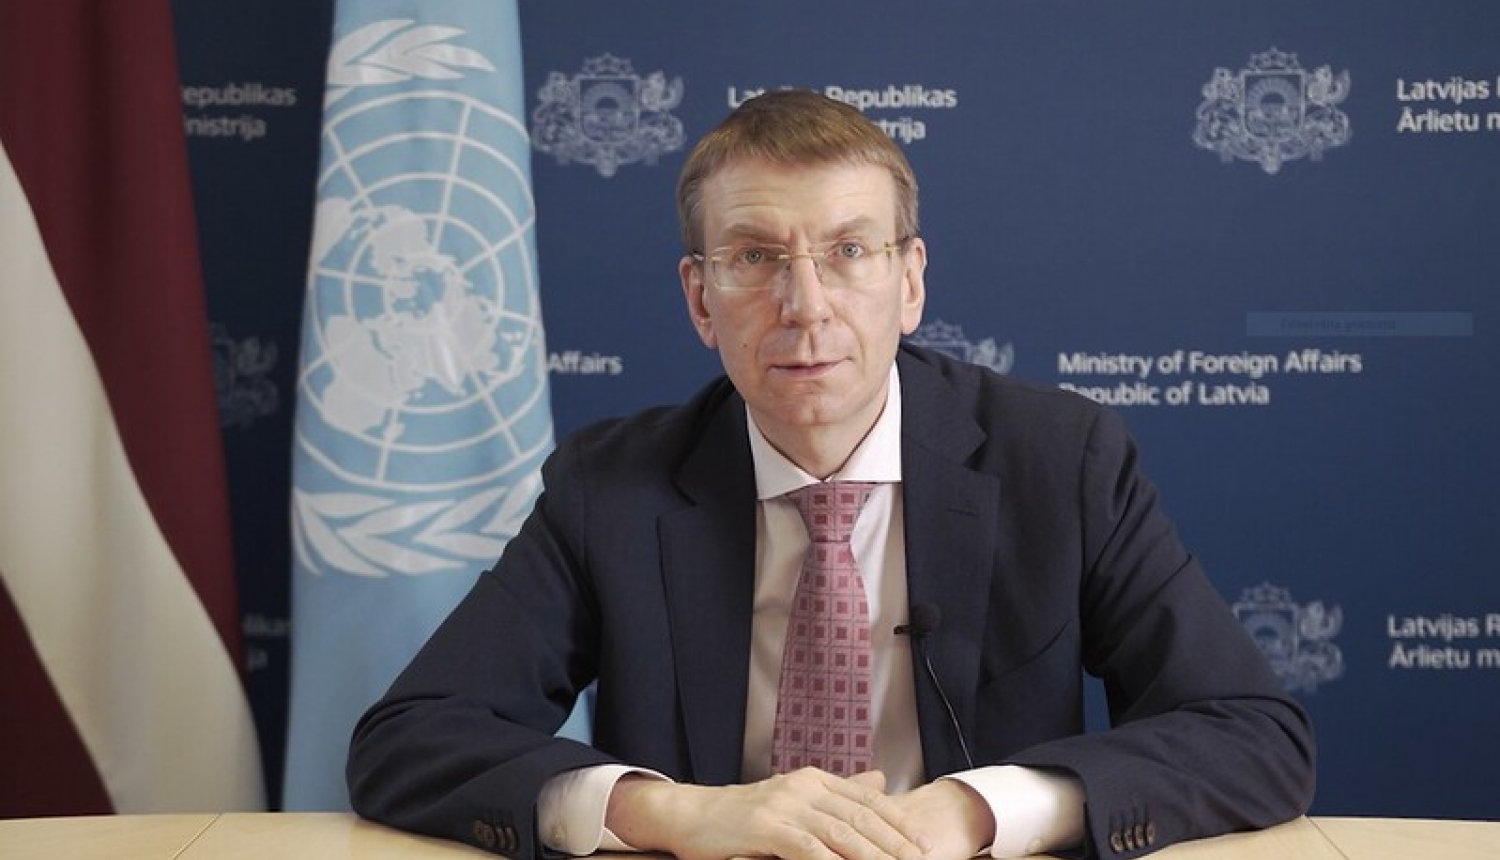 Ārlietu ministrs aicina ANO Cilvēktiesību padomi izveidot starptautisku mehānismu atbildības par cilvēktiesību pārkāpumiem Baltkrievijā veicināšanai